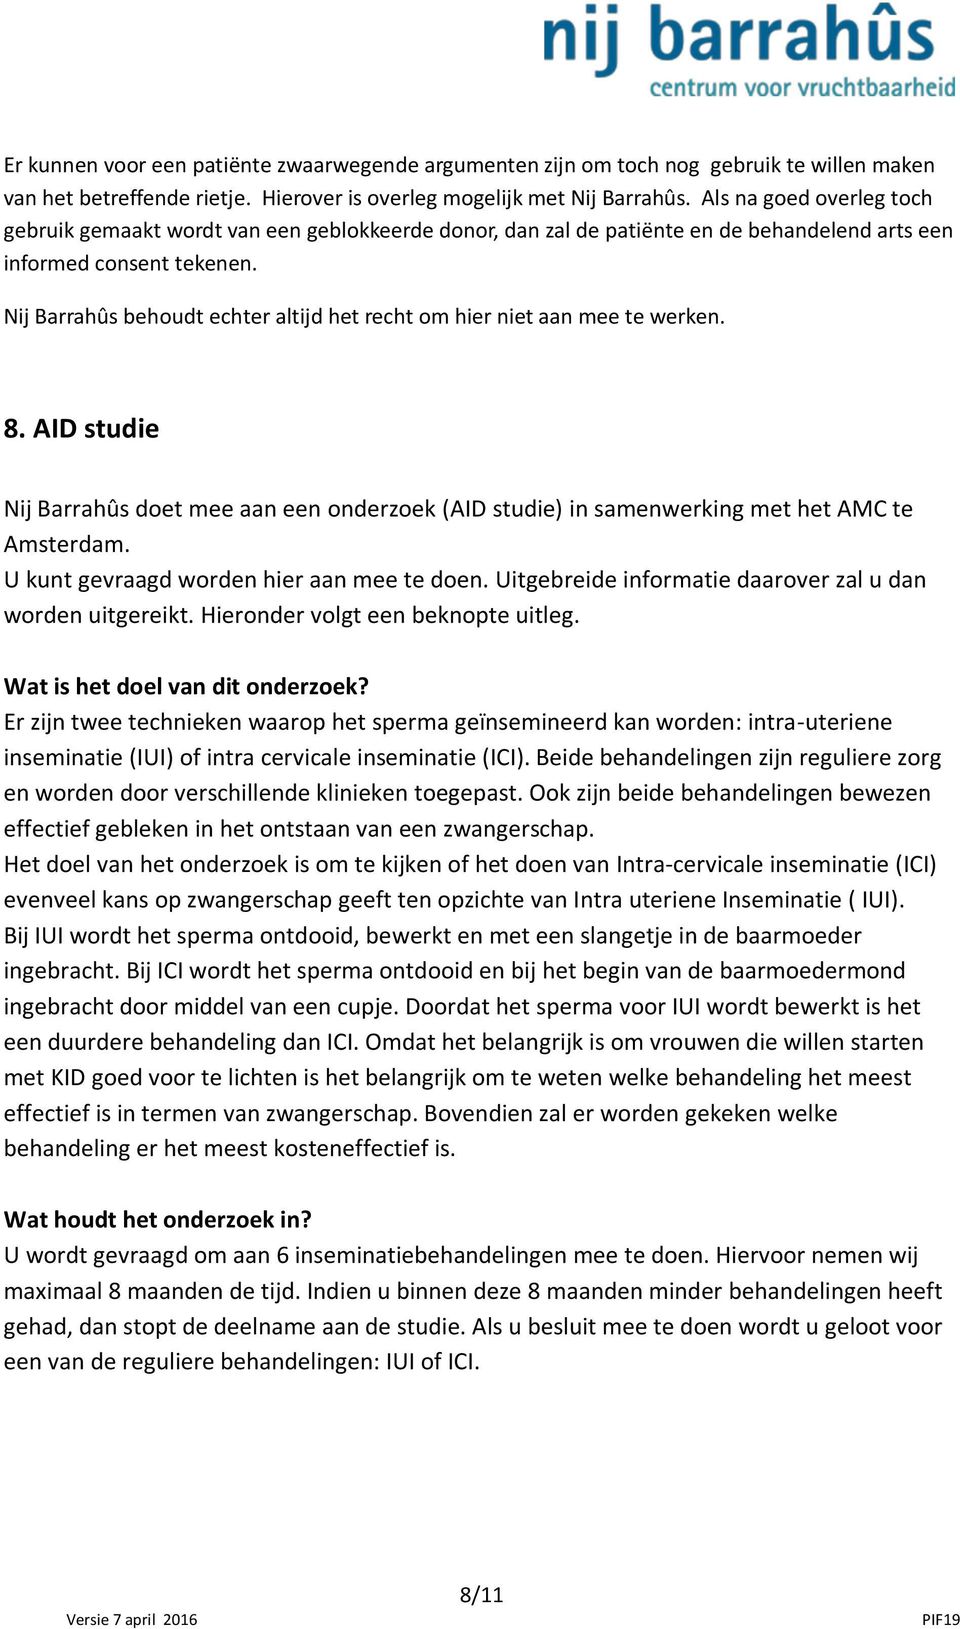 Nij Barrahûs behoudt echter altijd het recht om hier niet aan mee te werken. 8. AID studie Nij Barrahûs doet mee aan een onderzoek (AID studie) in samenwerking met het AMC te Amsterdam.